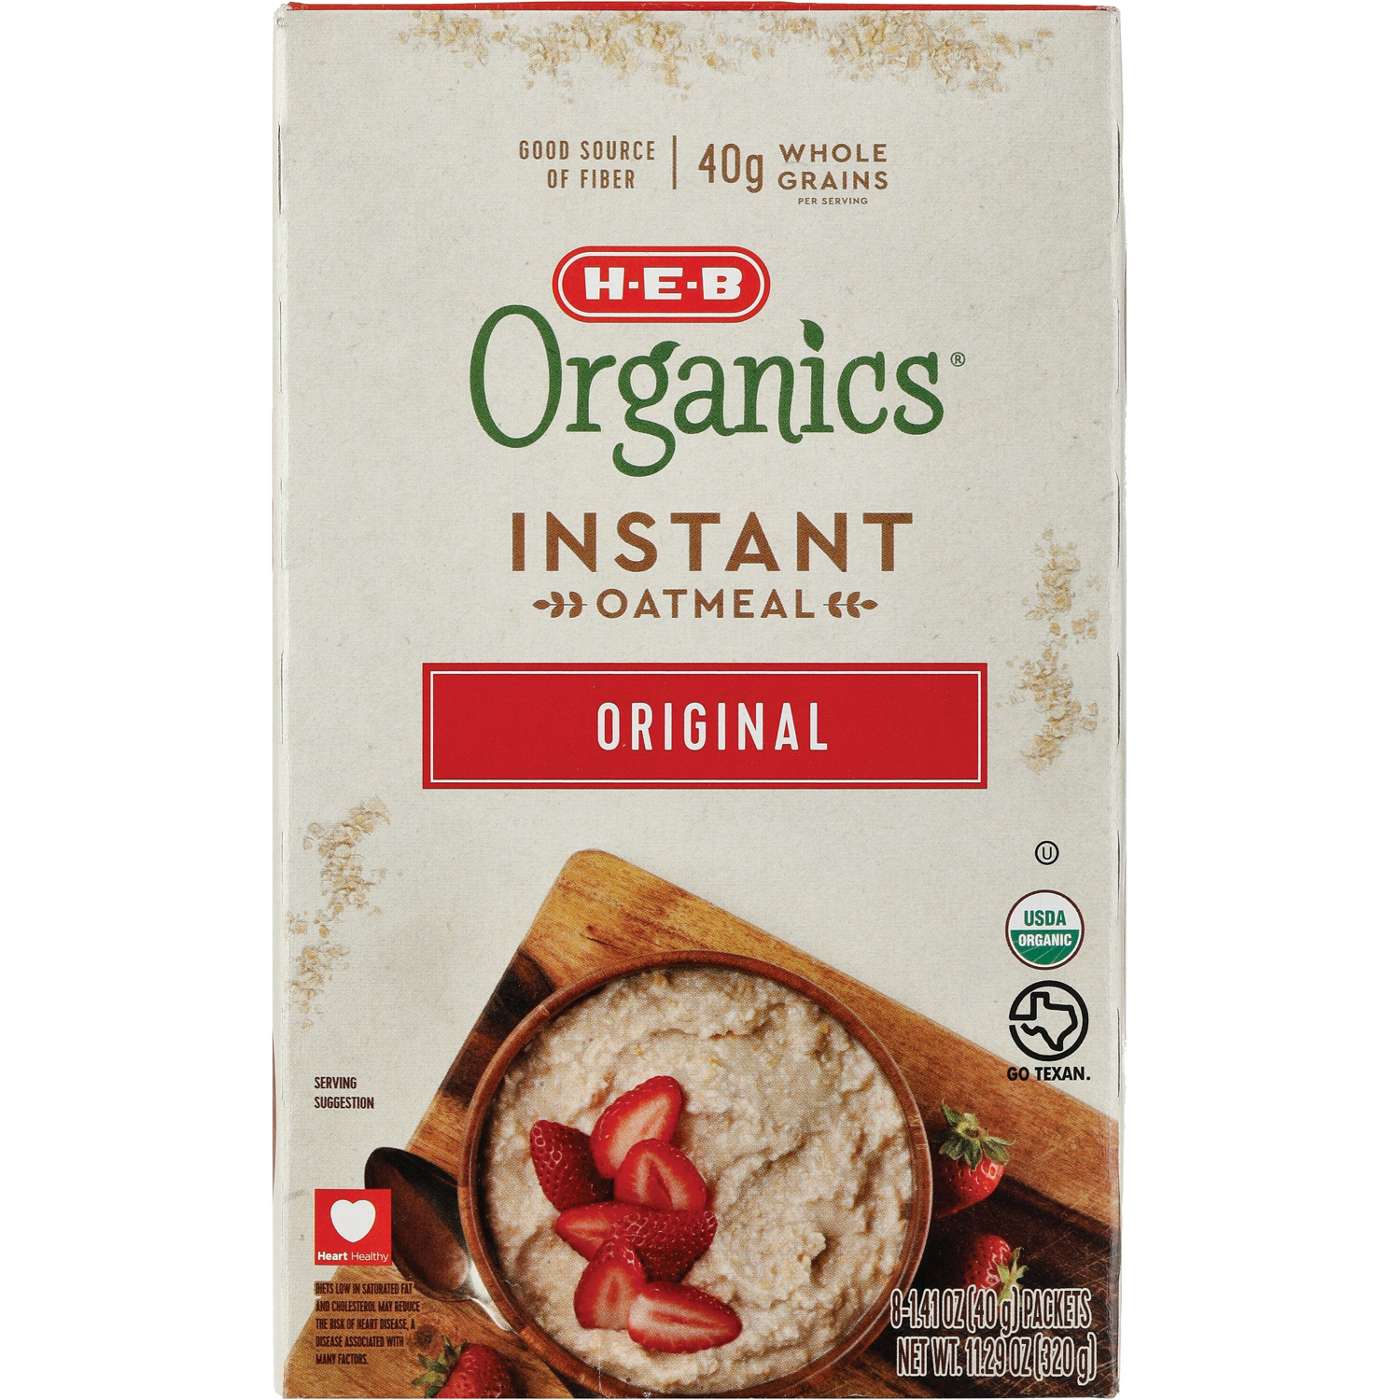 H-E-B Organics Instant Oatmeal - Original; image 1 of 2